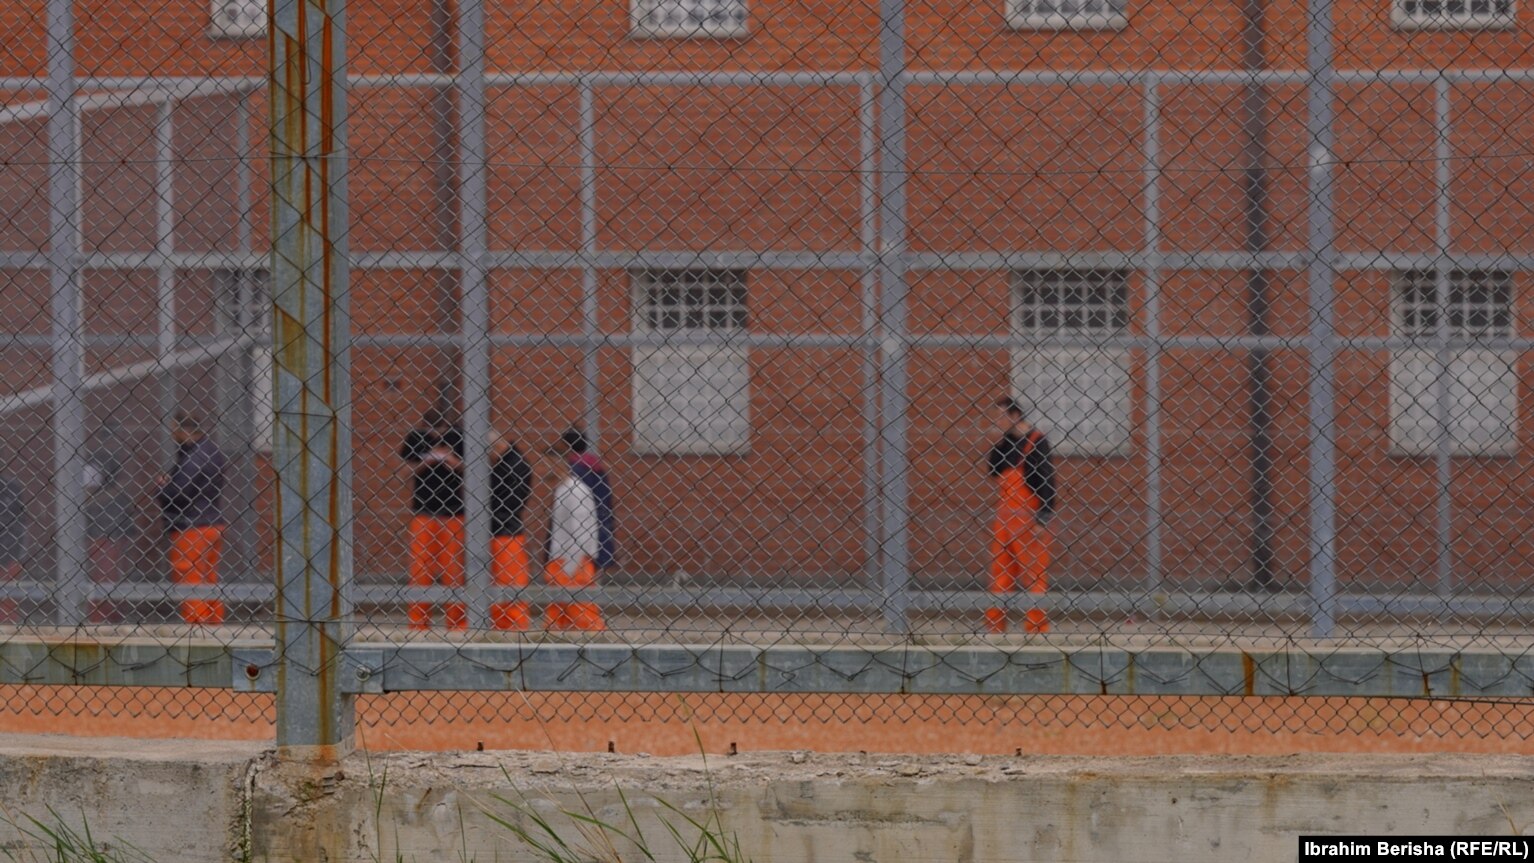 Të burgosurit në Qendrën e Paraburgimit në Gjilan gjatë kohës së lirë.